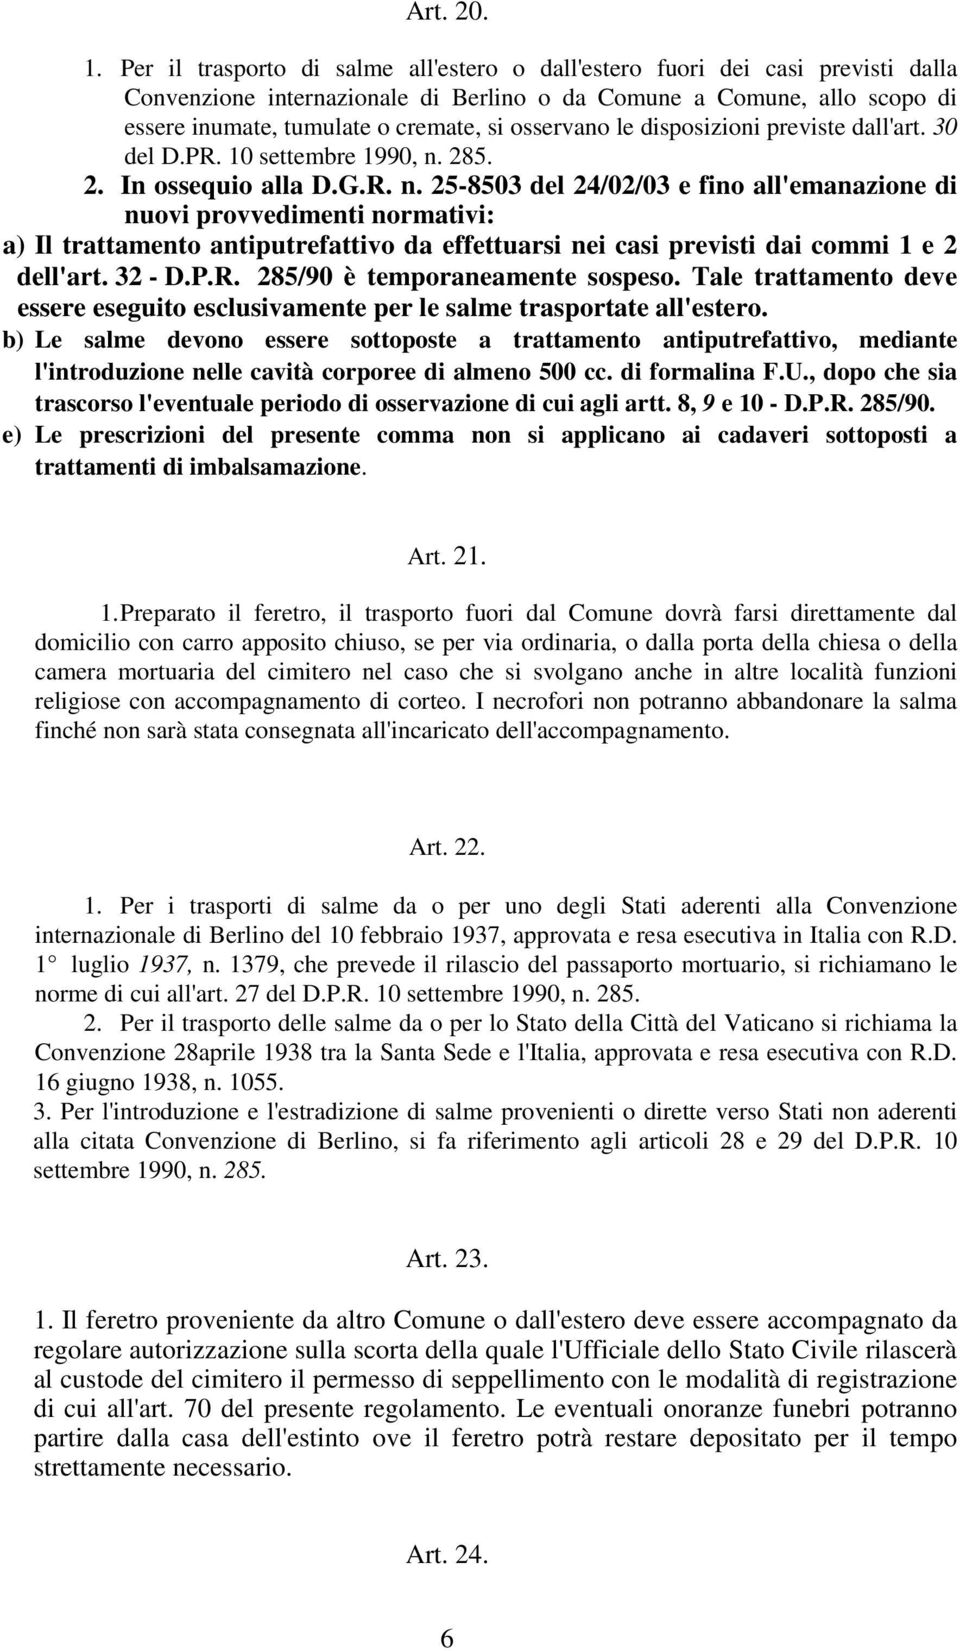 osservano le disposizioni previste dall'art. 30 del D.PR. 10 settembre 1990, n.